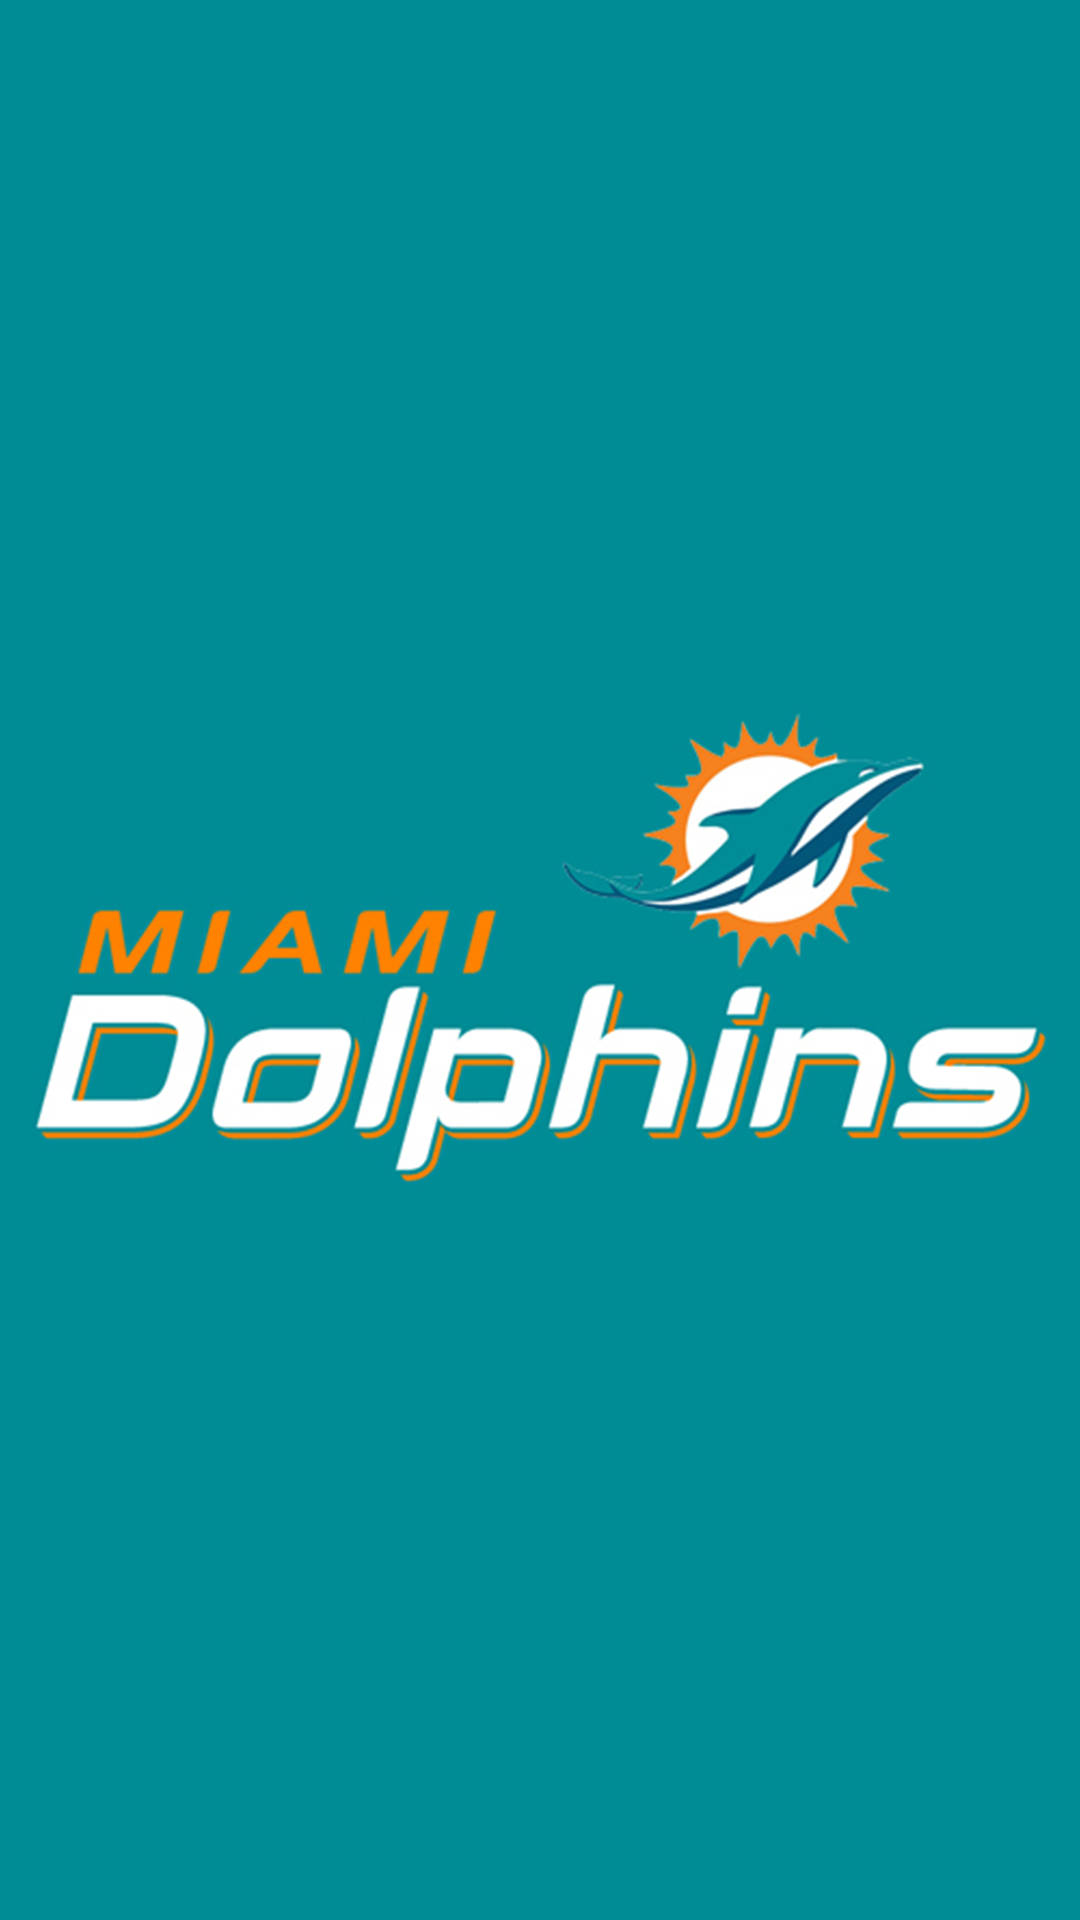 !Vis din Miami Dolphins stolthed med dette smartphone-tapet! Wallpaper